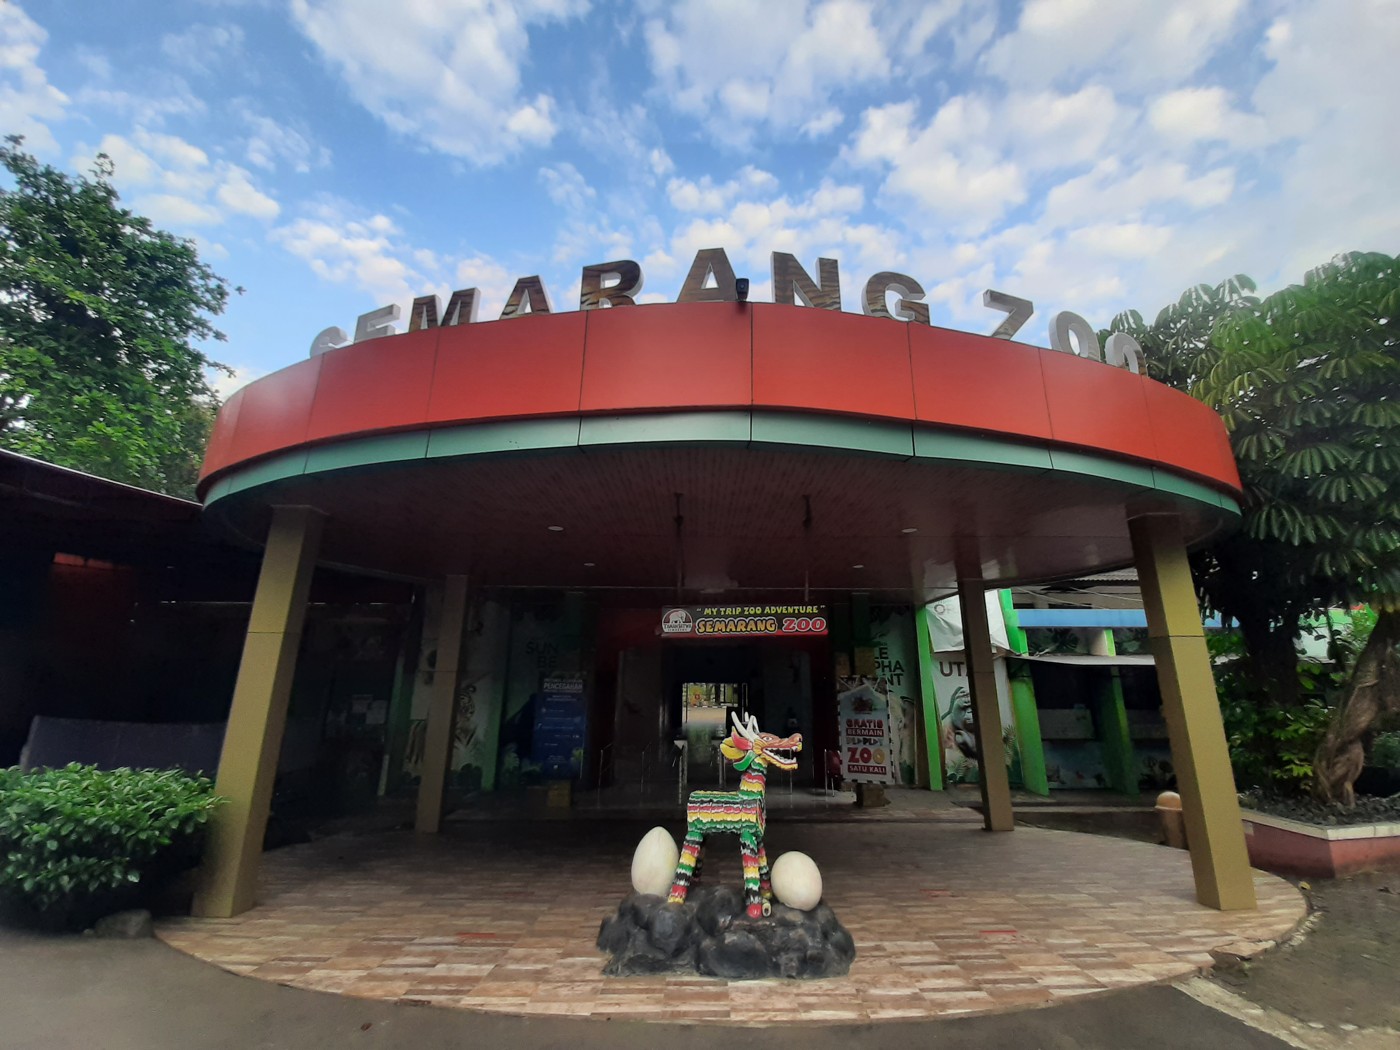 Semarang Zoo